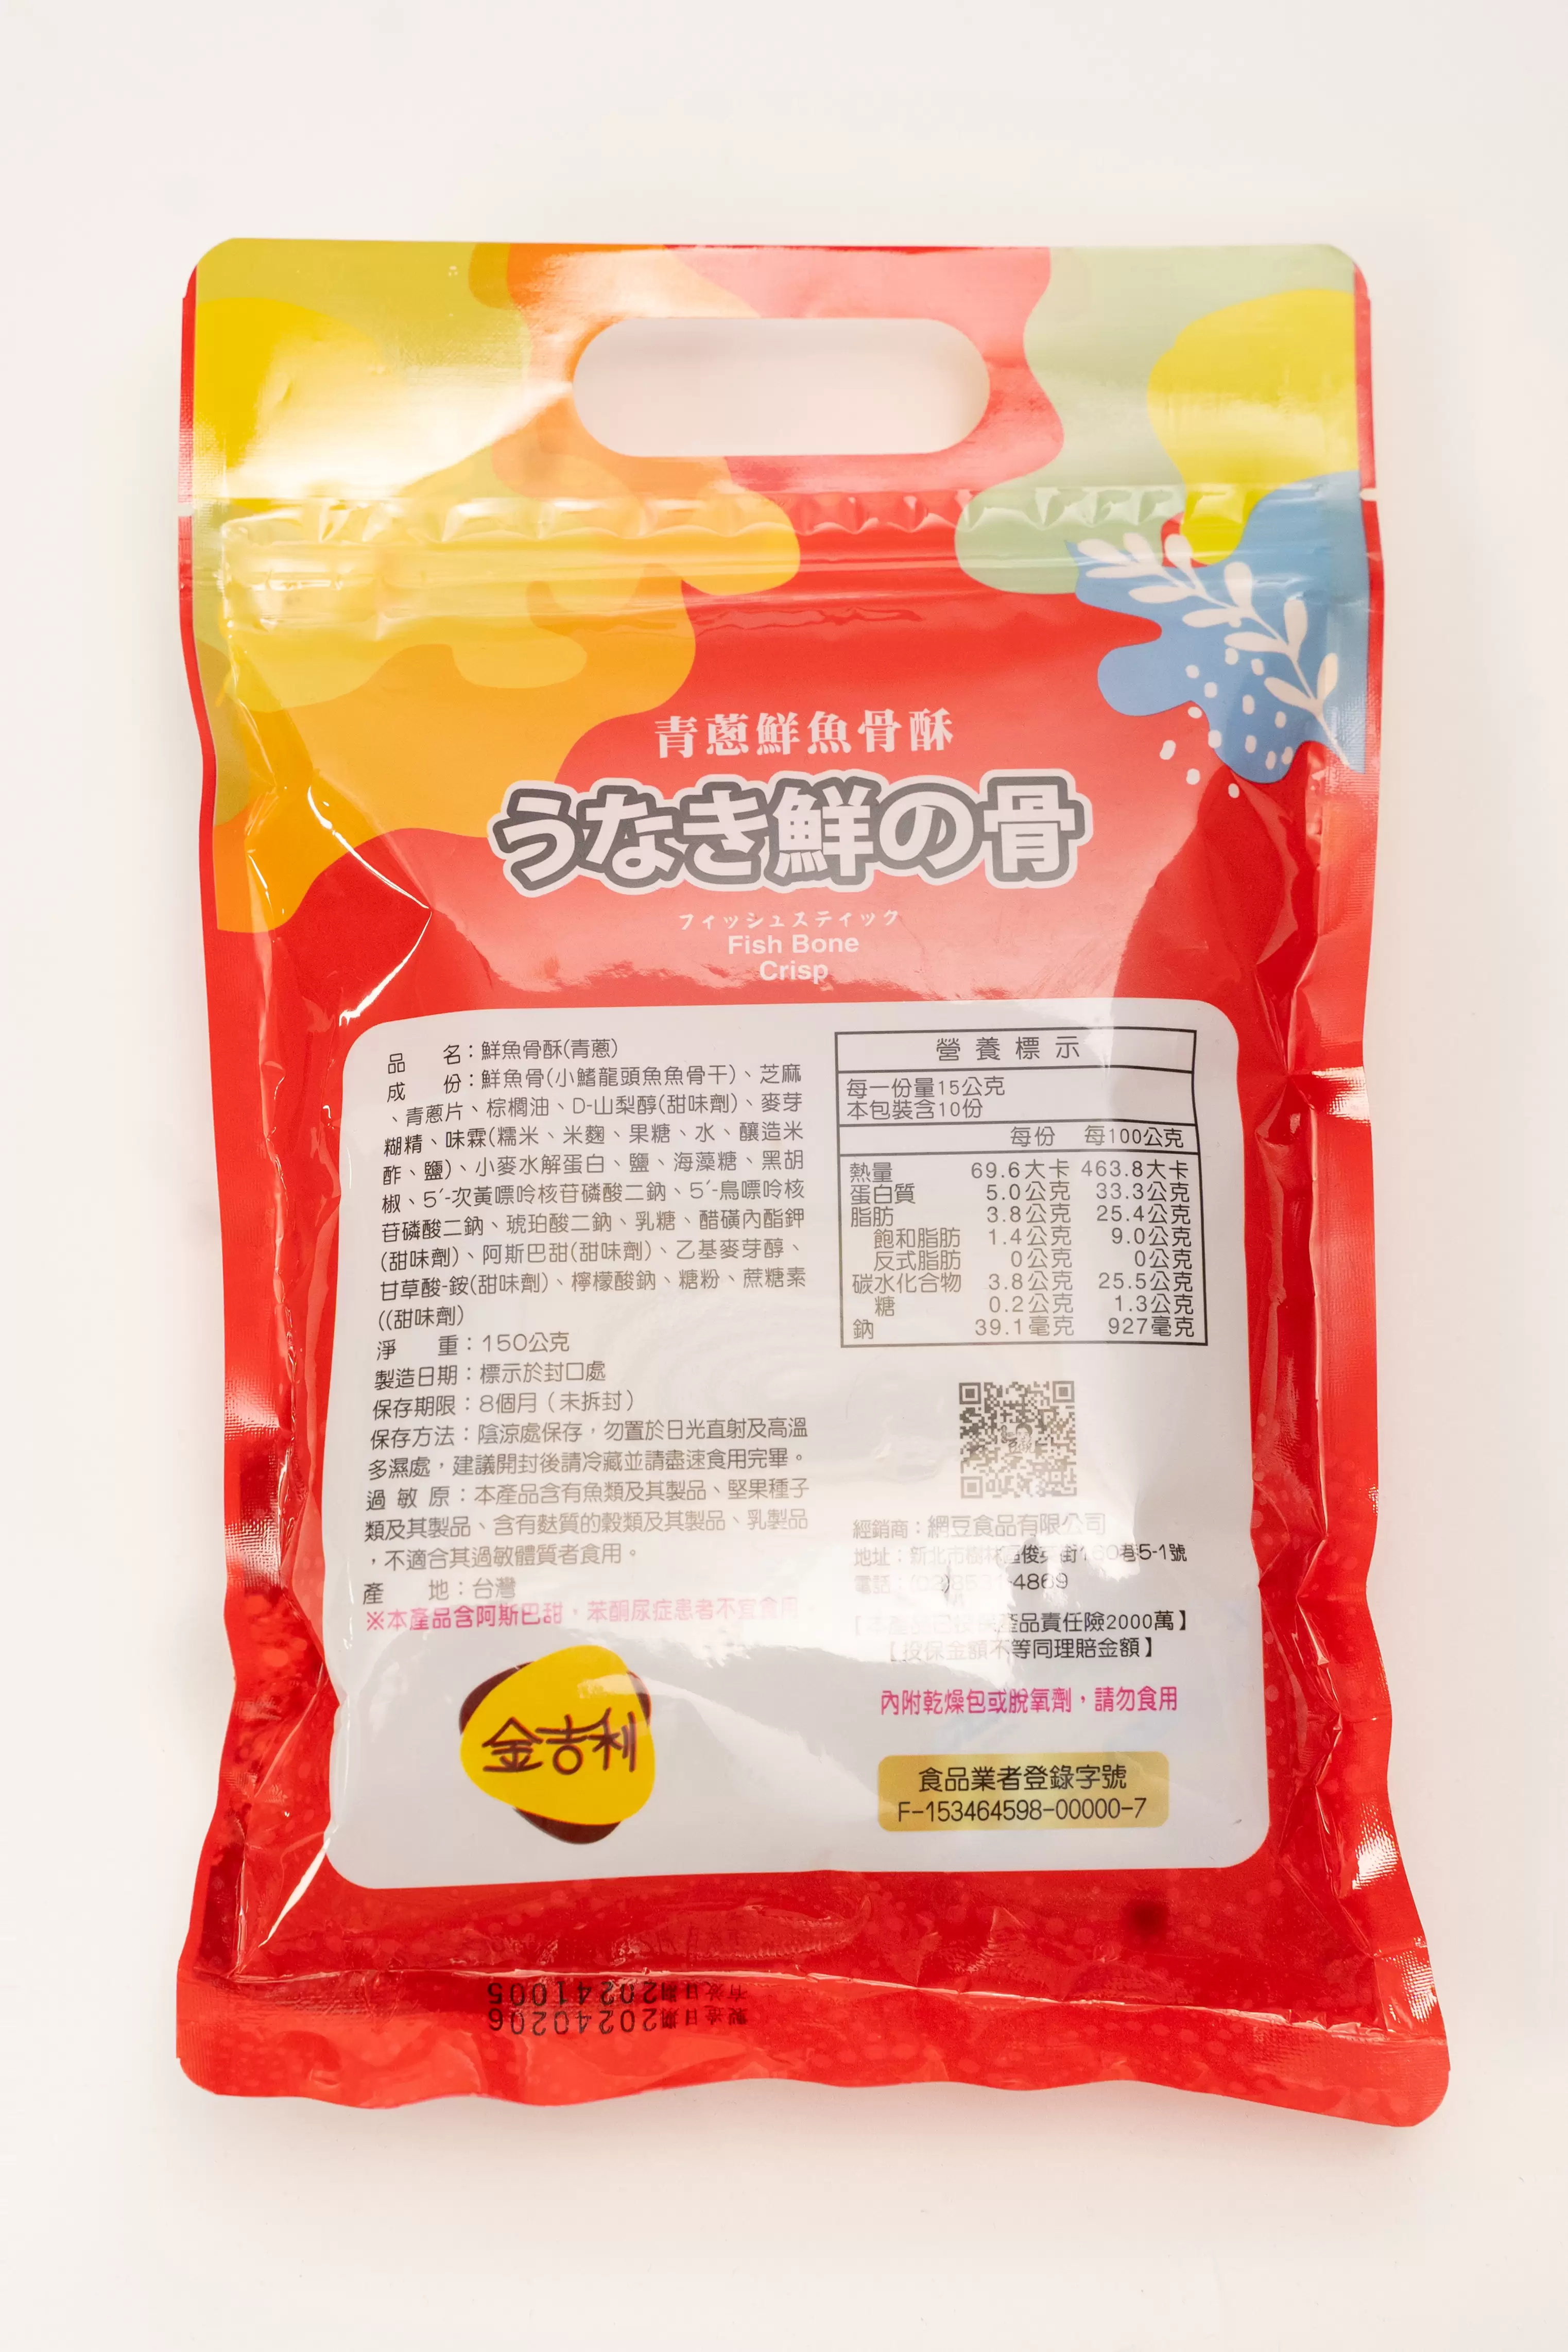 鮮魚骨酥-150g